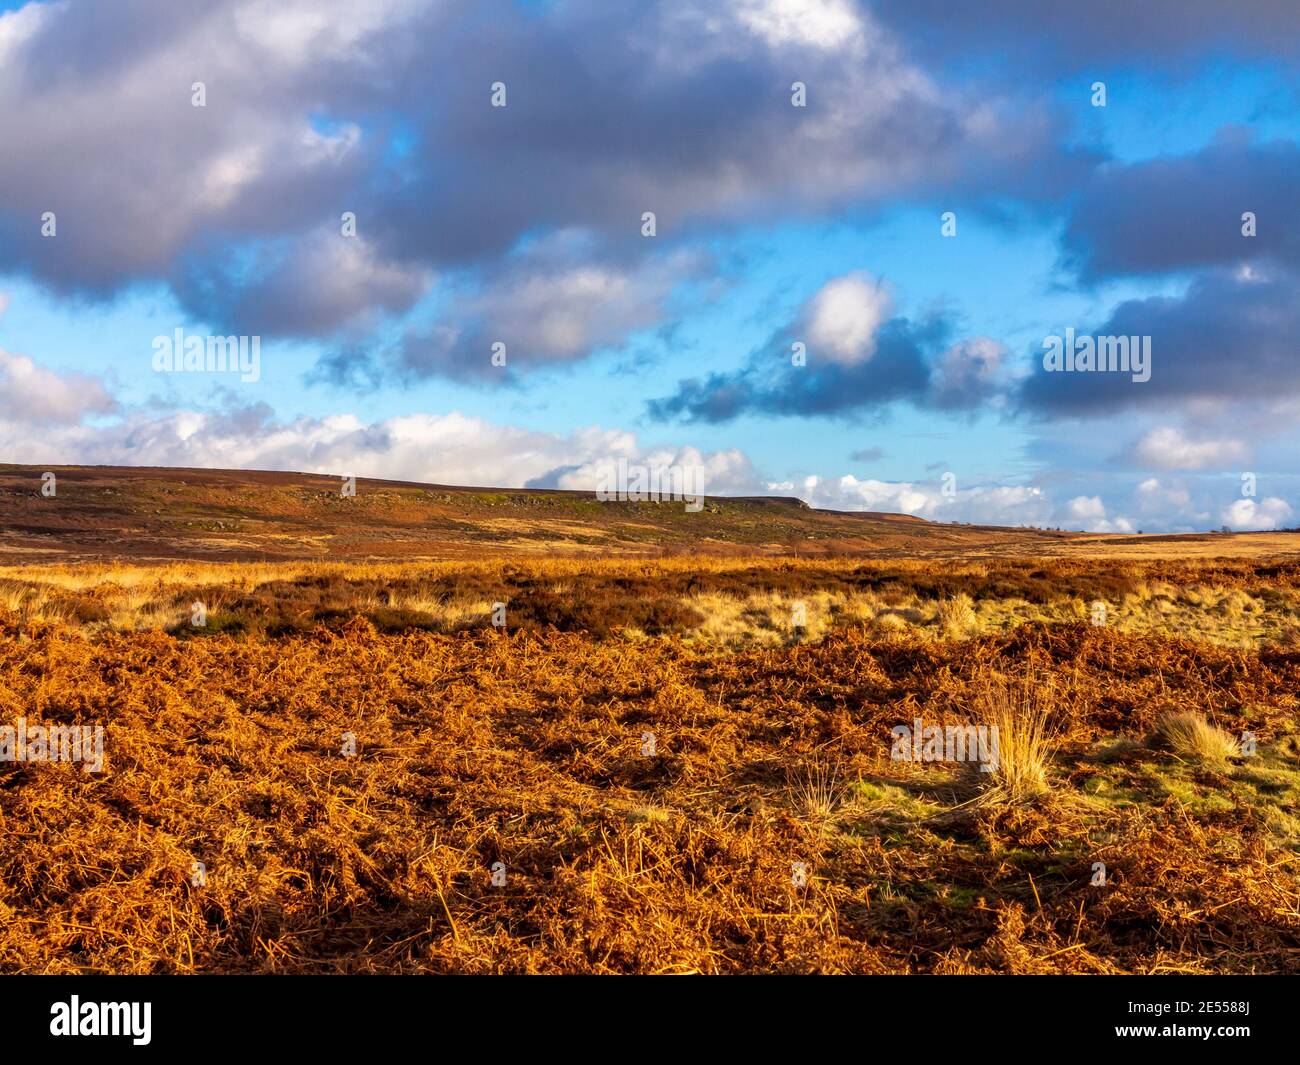 Paesaggio invernale con cielo suggestivo a Beeley Moor vicino a Bakewell Nel Peak District National Park Derbyshire Inghilterra Regno Unito Foto Stock